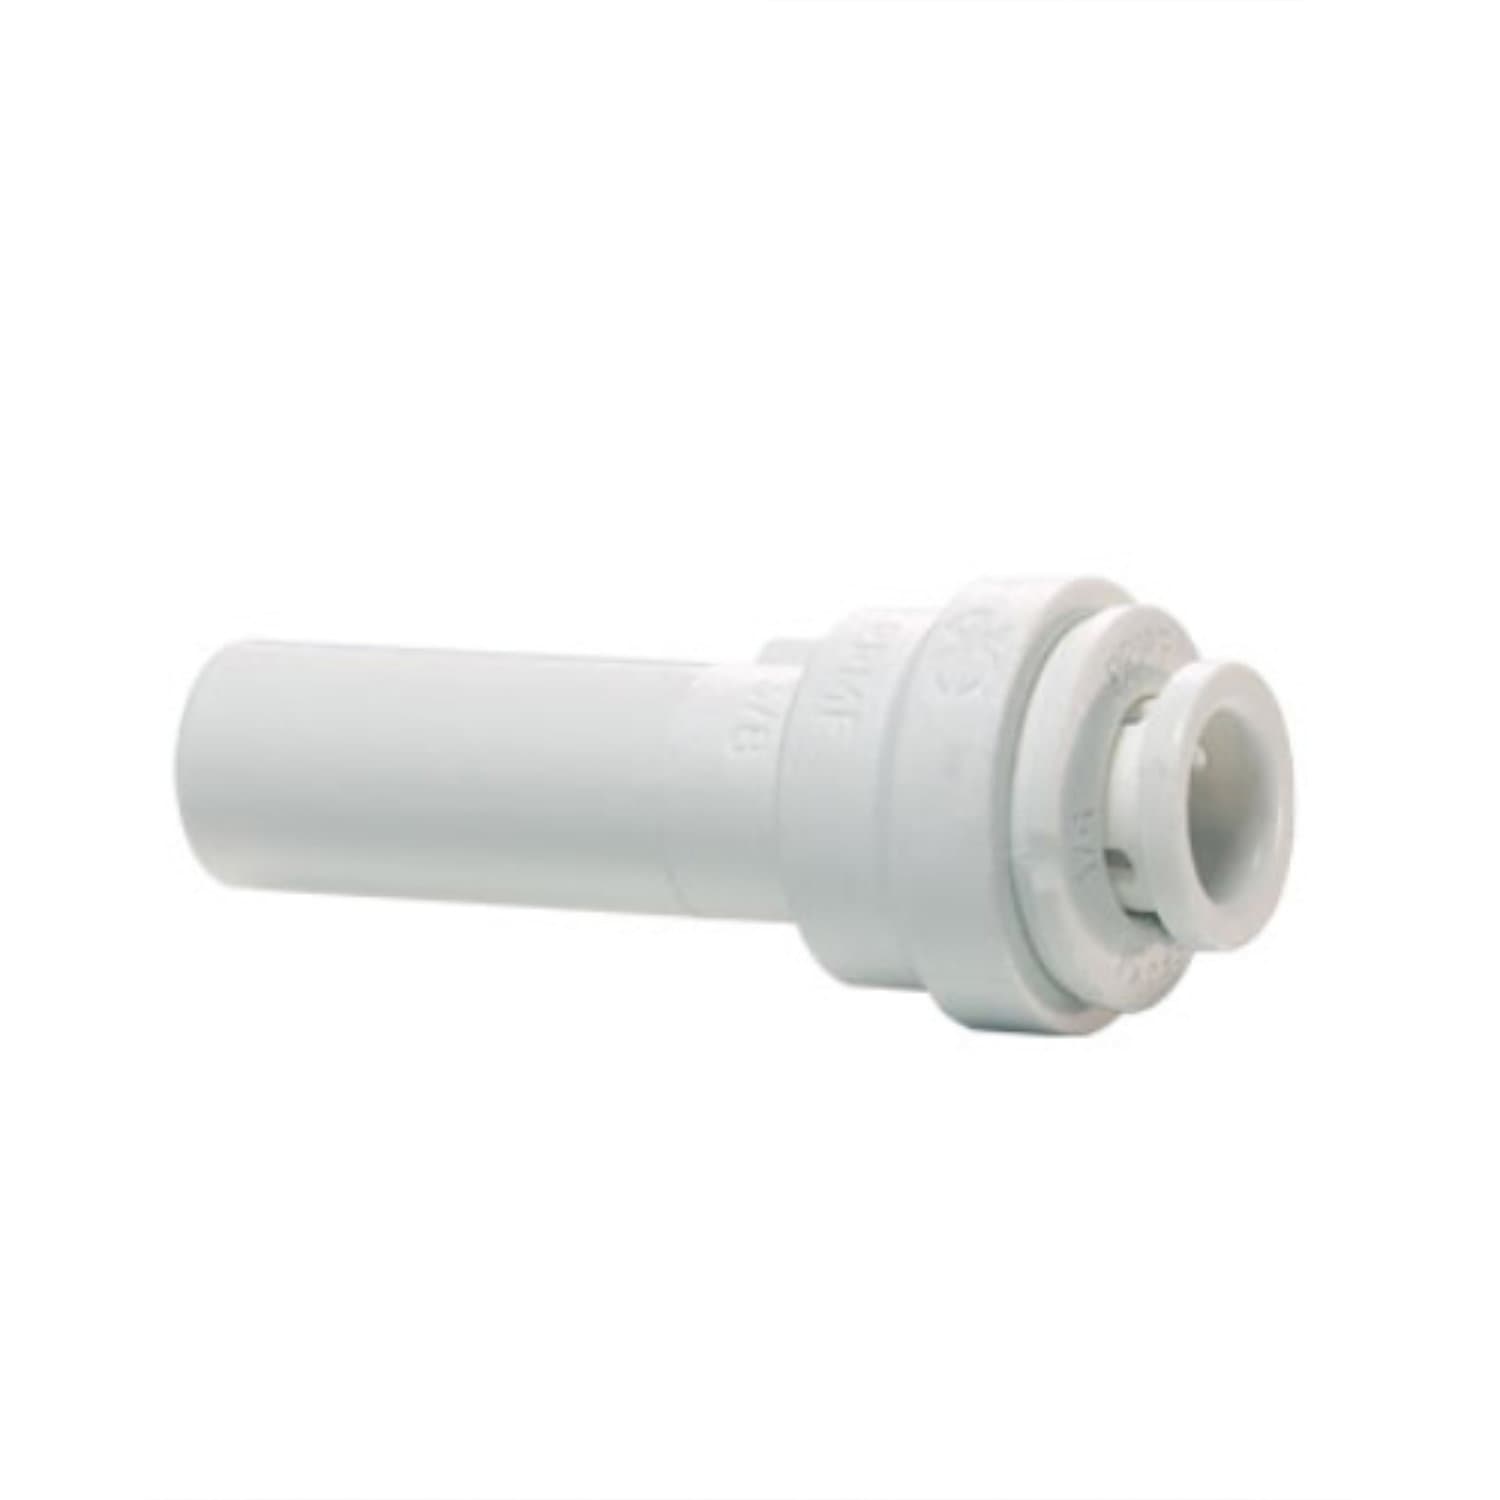 Einsteck-Reduzierberbinder in weiß 15 mm auf 12 mm